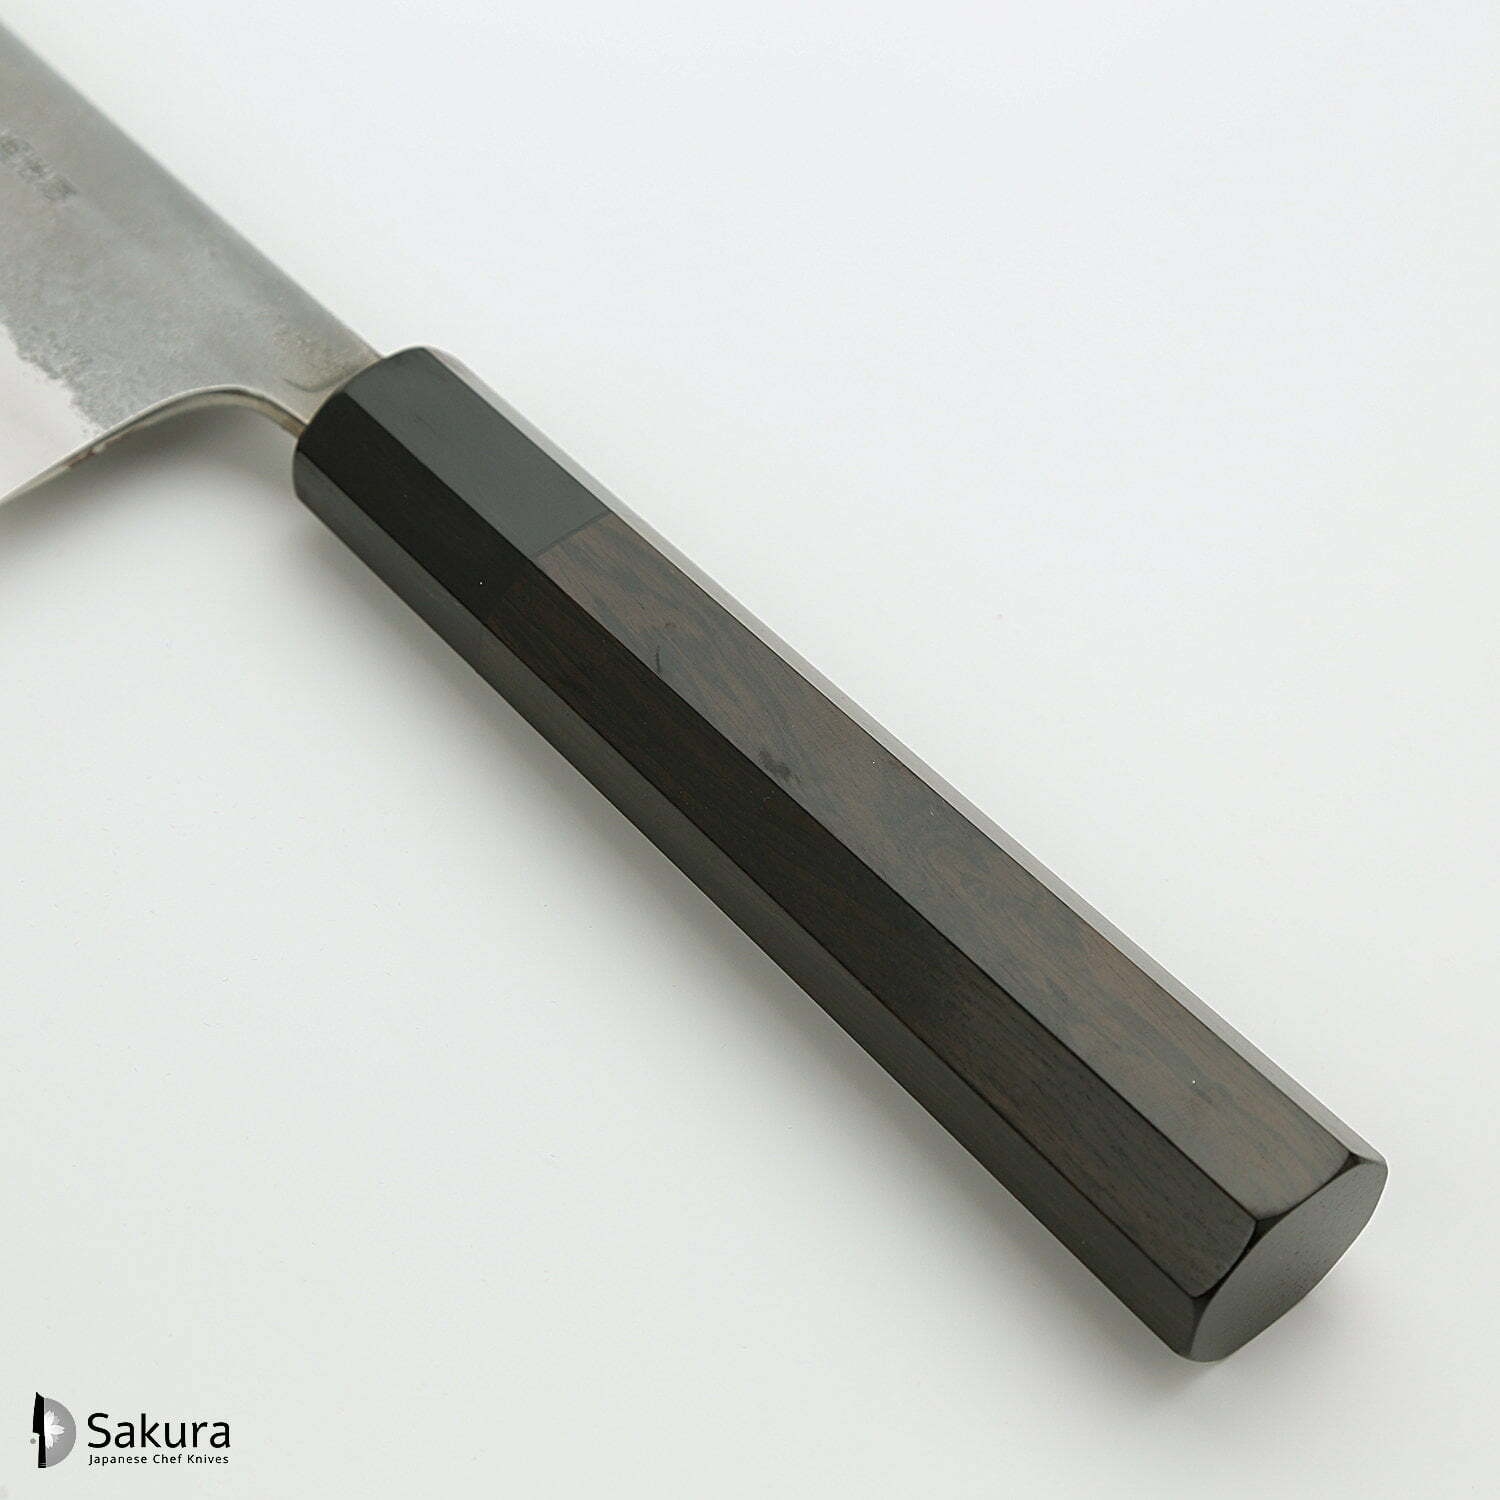 סכין שף רב-תכליתית קִּירִיצוּקֶה גִּיוּטוֹ 240מ״מ מחושלת בעבודת יד 3 שכבות: פלדת פחמן יפנית מתקדמת מסוג SKD עטופה פלדת אל-חלד גימור קורורוצ׳י מט חיספוס טבעי יושיקאנה יפן